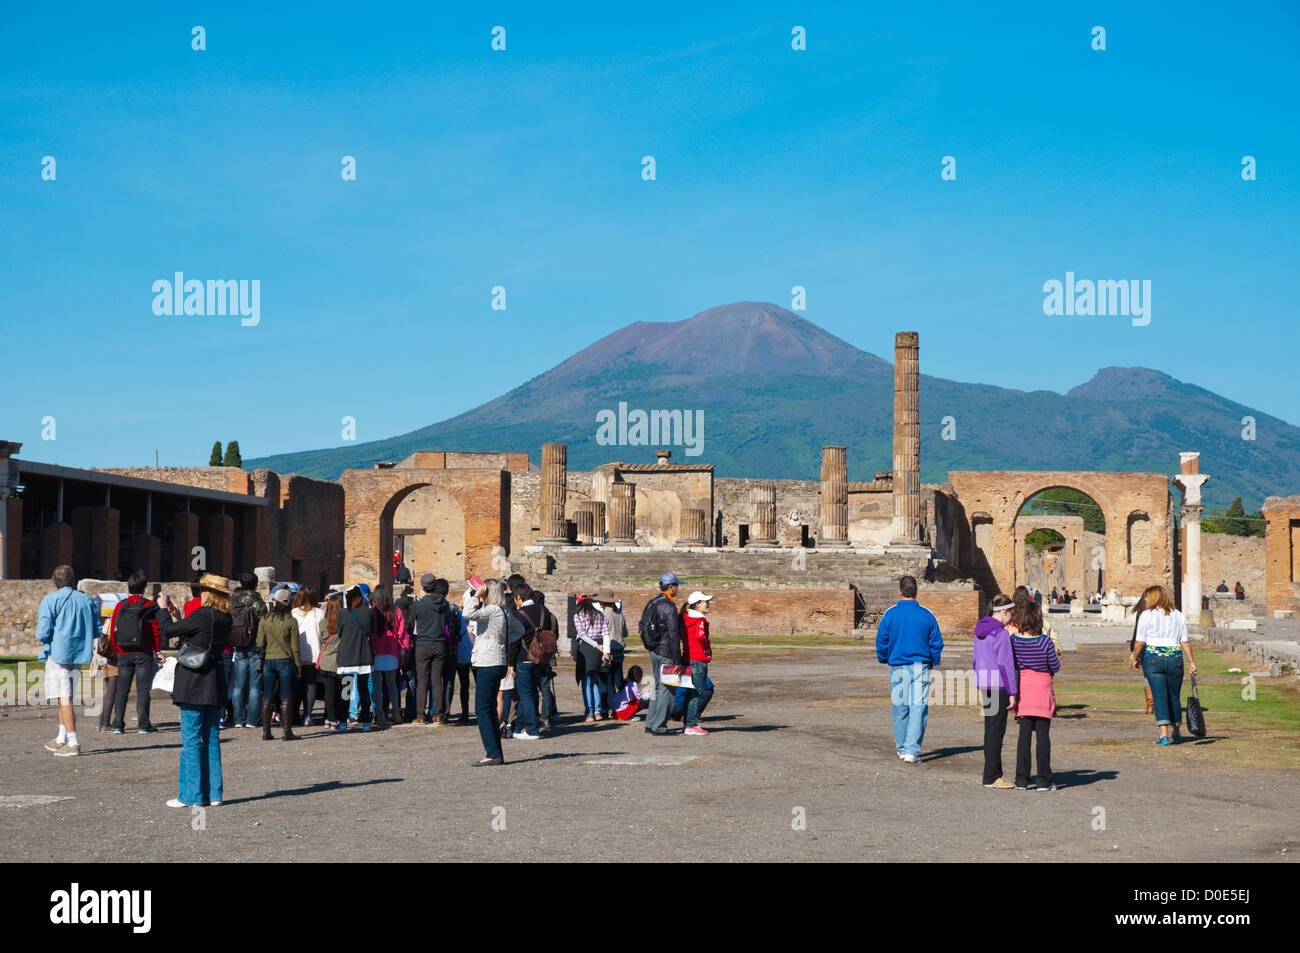 Forum Le Forum avec le Vésuve en arrière-plan la ville romaine de Pompéi ensevelie en lava près de Naples Italie Banque D'Images